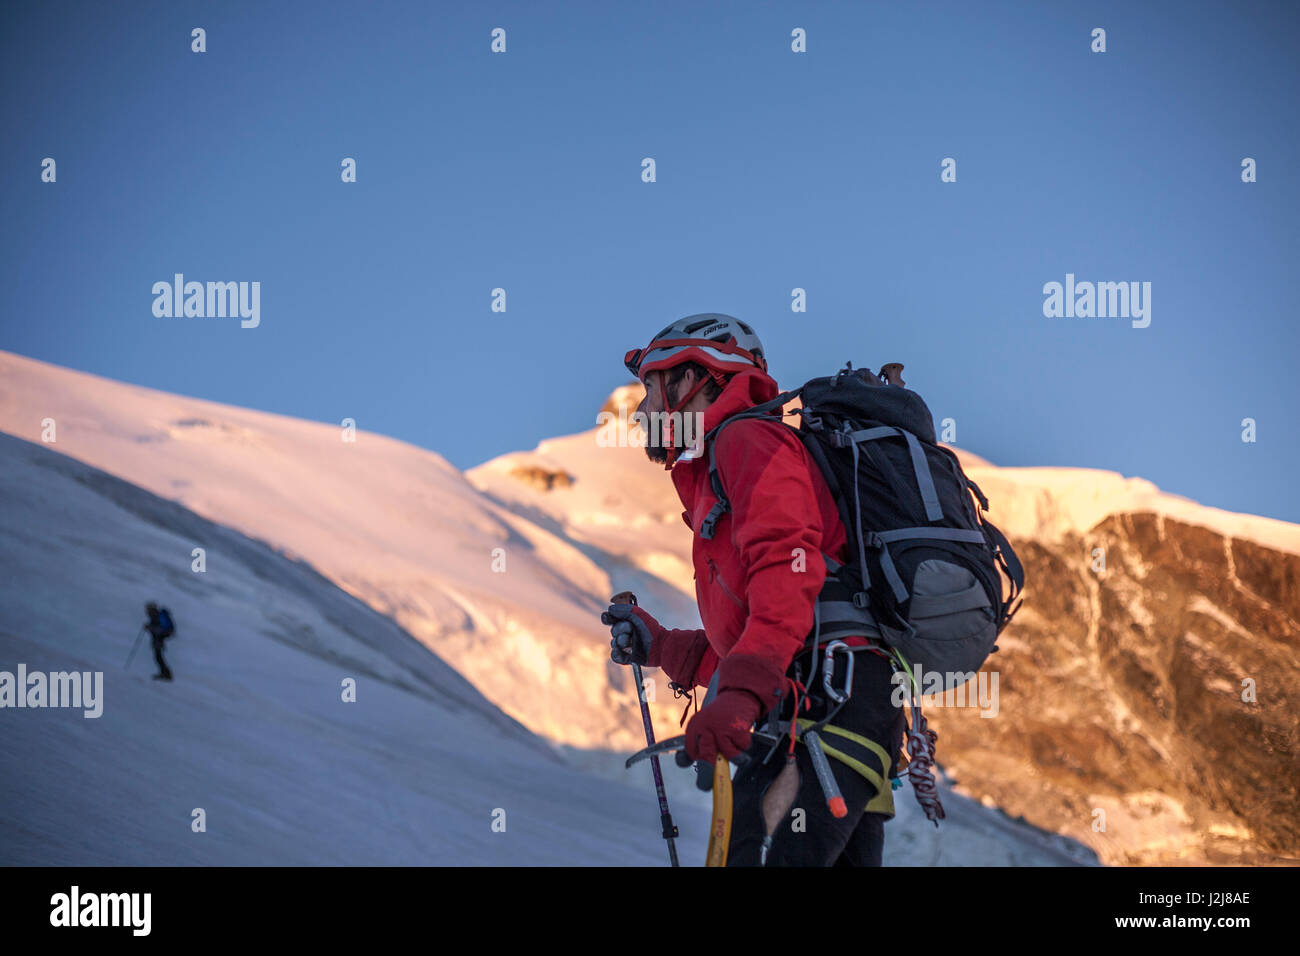 1 persona, trekking, vie fino alla vetta, approccio, vista in avanti, scenario, summit, ghiacciaio, silenzio, avventura, silenzio, equilibrato, destinazione, adattatore, Foto Stock